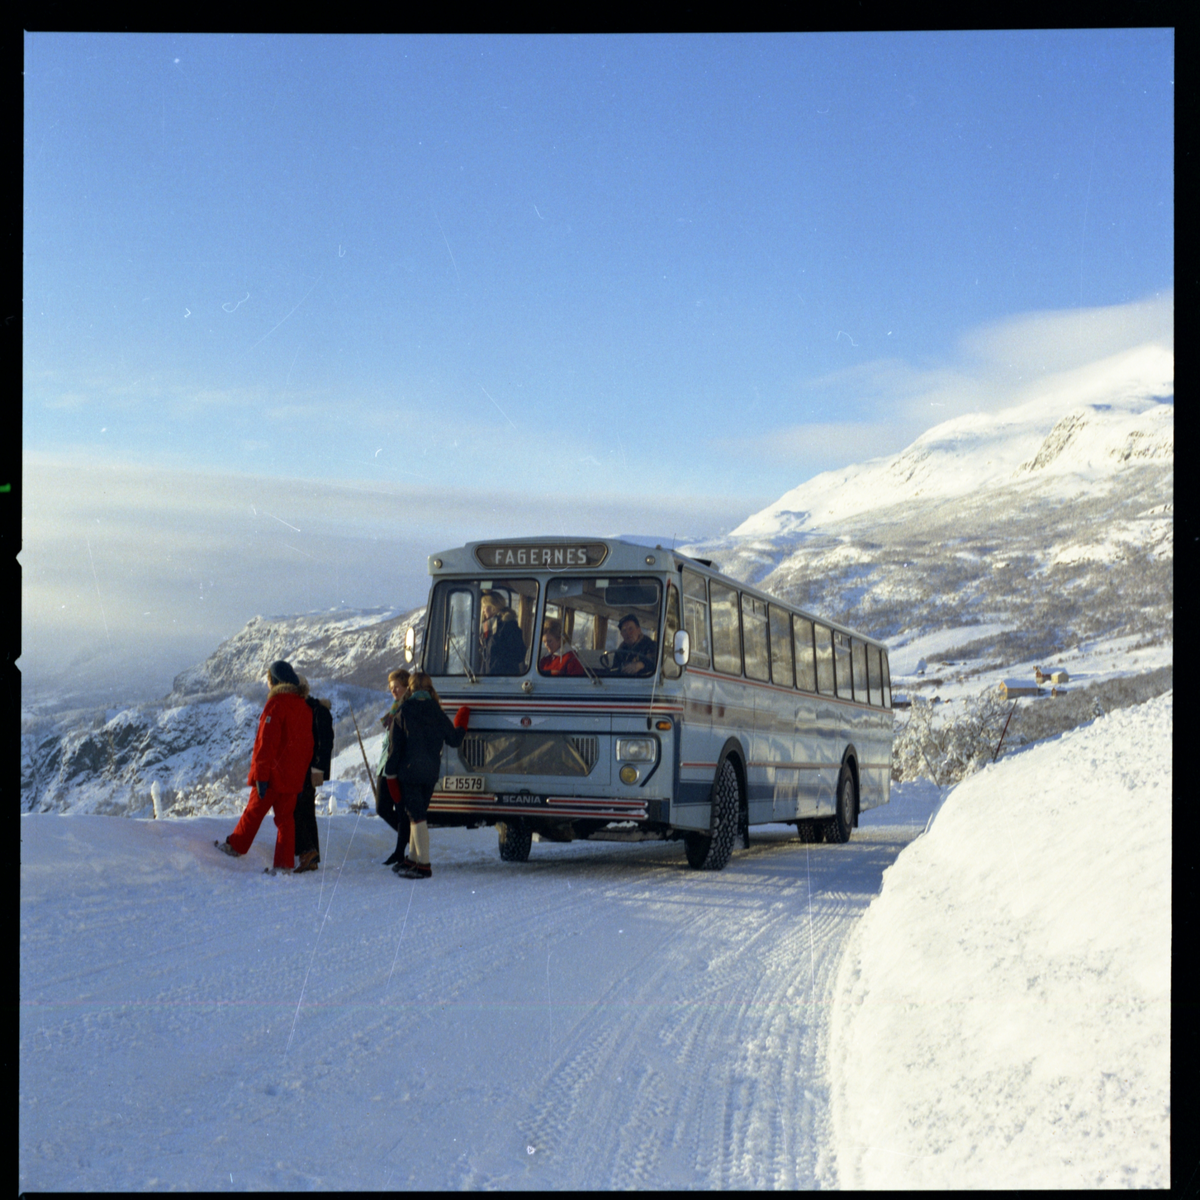 JVB buss Scania BF 80, E-15579 på tur i Valdres med reisebyråansatte.